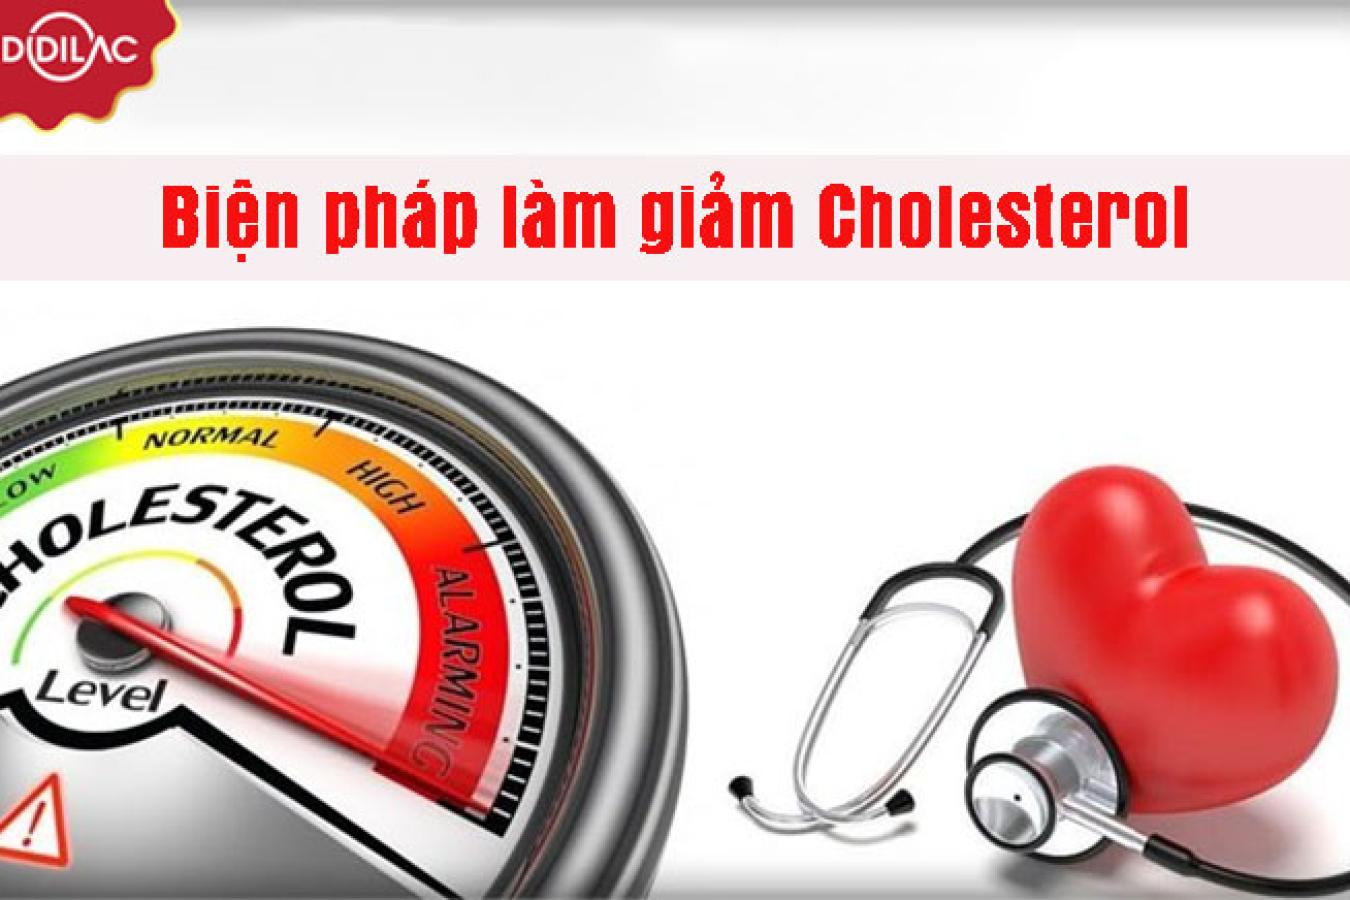 Phải làm gì khi Cholesterol cao? Biện pháp làm giảm Cholesterol